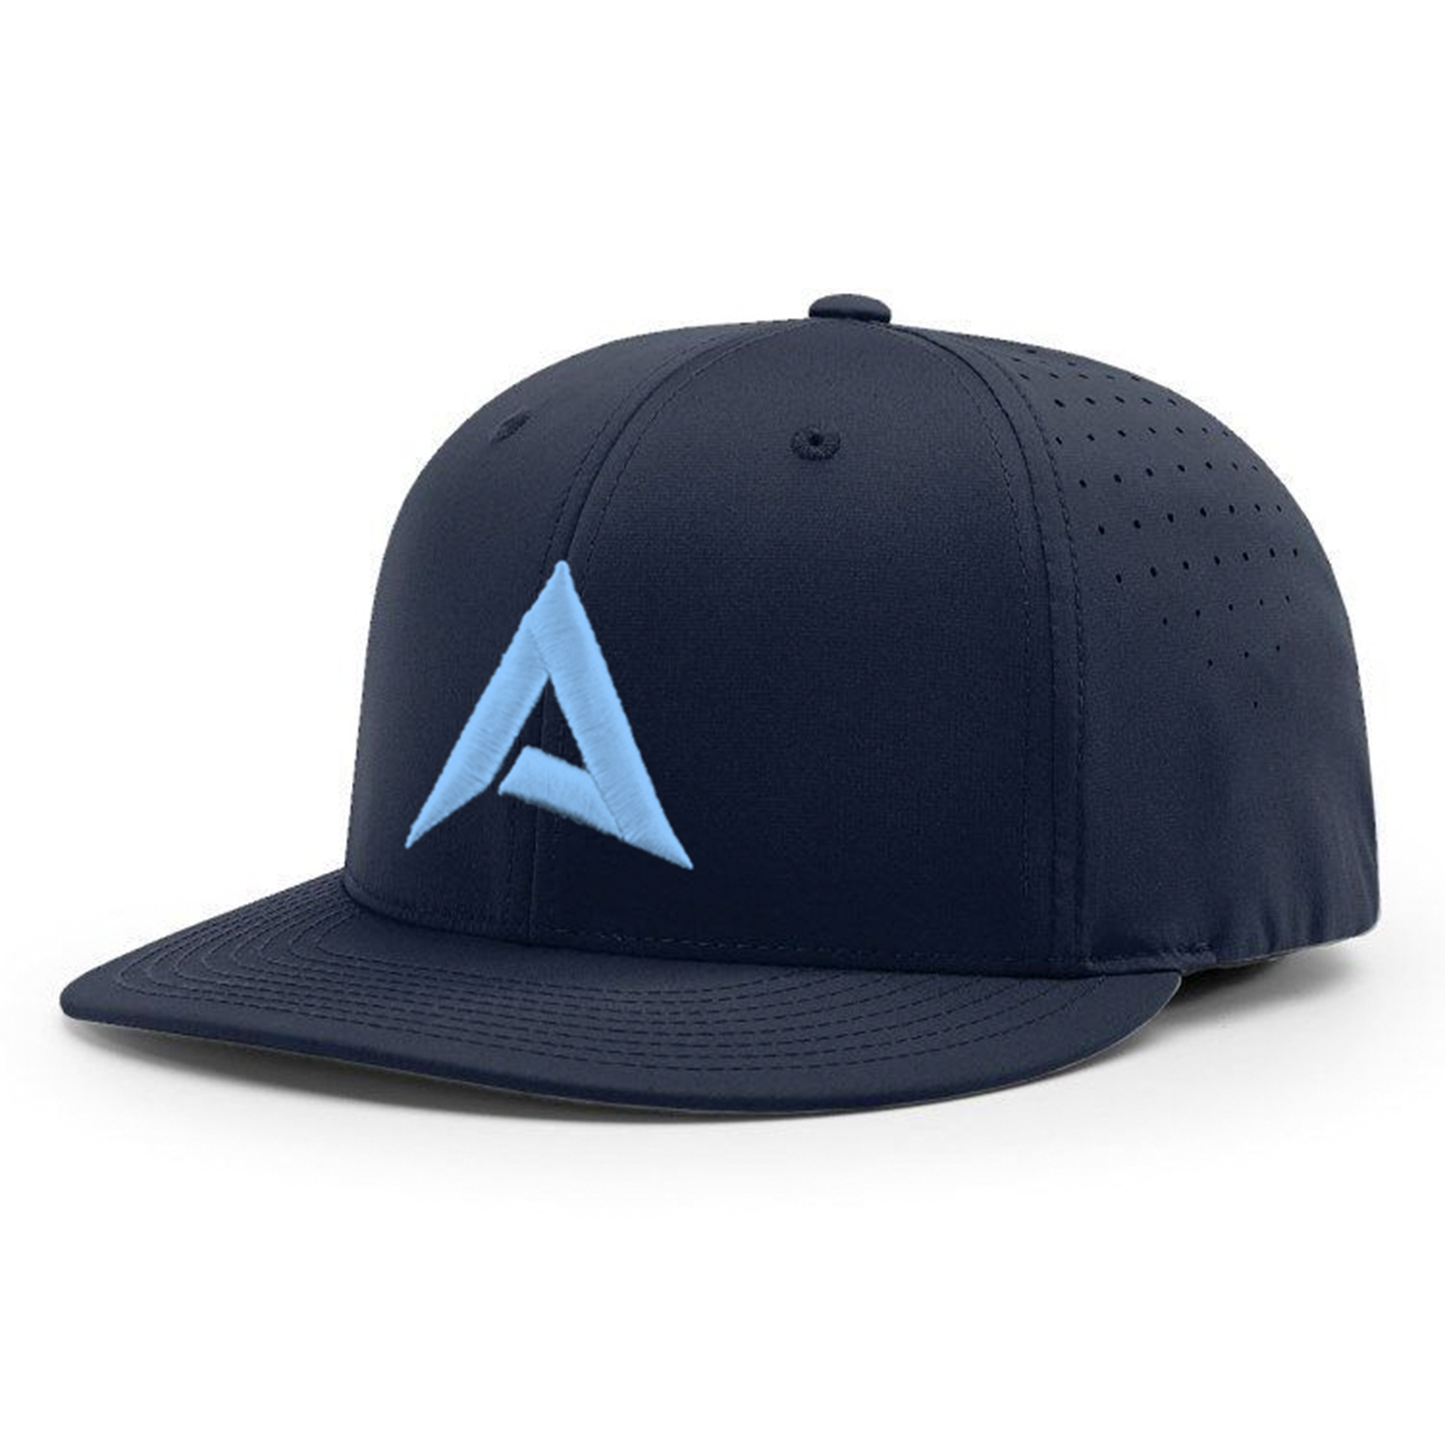 Anarchy CA i8503 Performance Hat - New Logo - Navy/Carolina